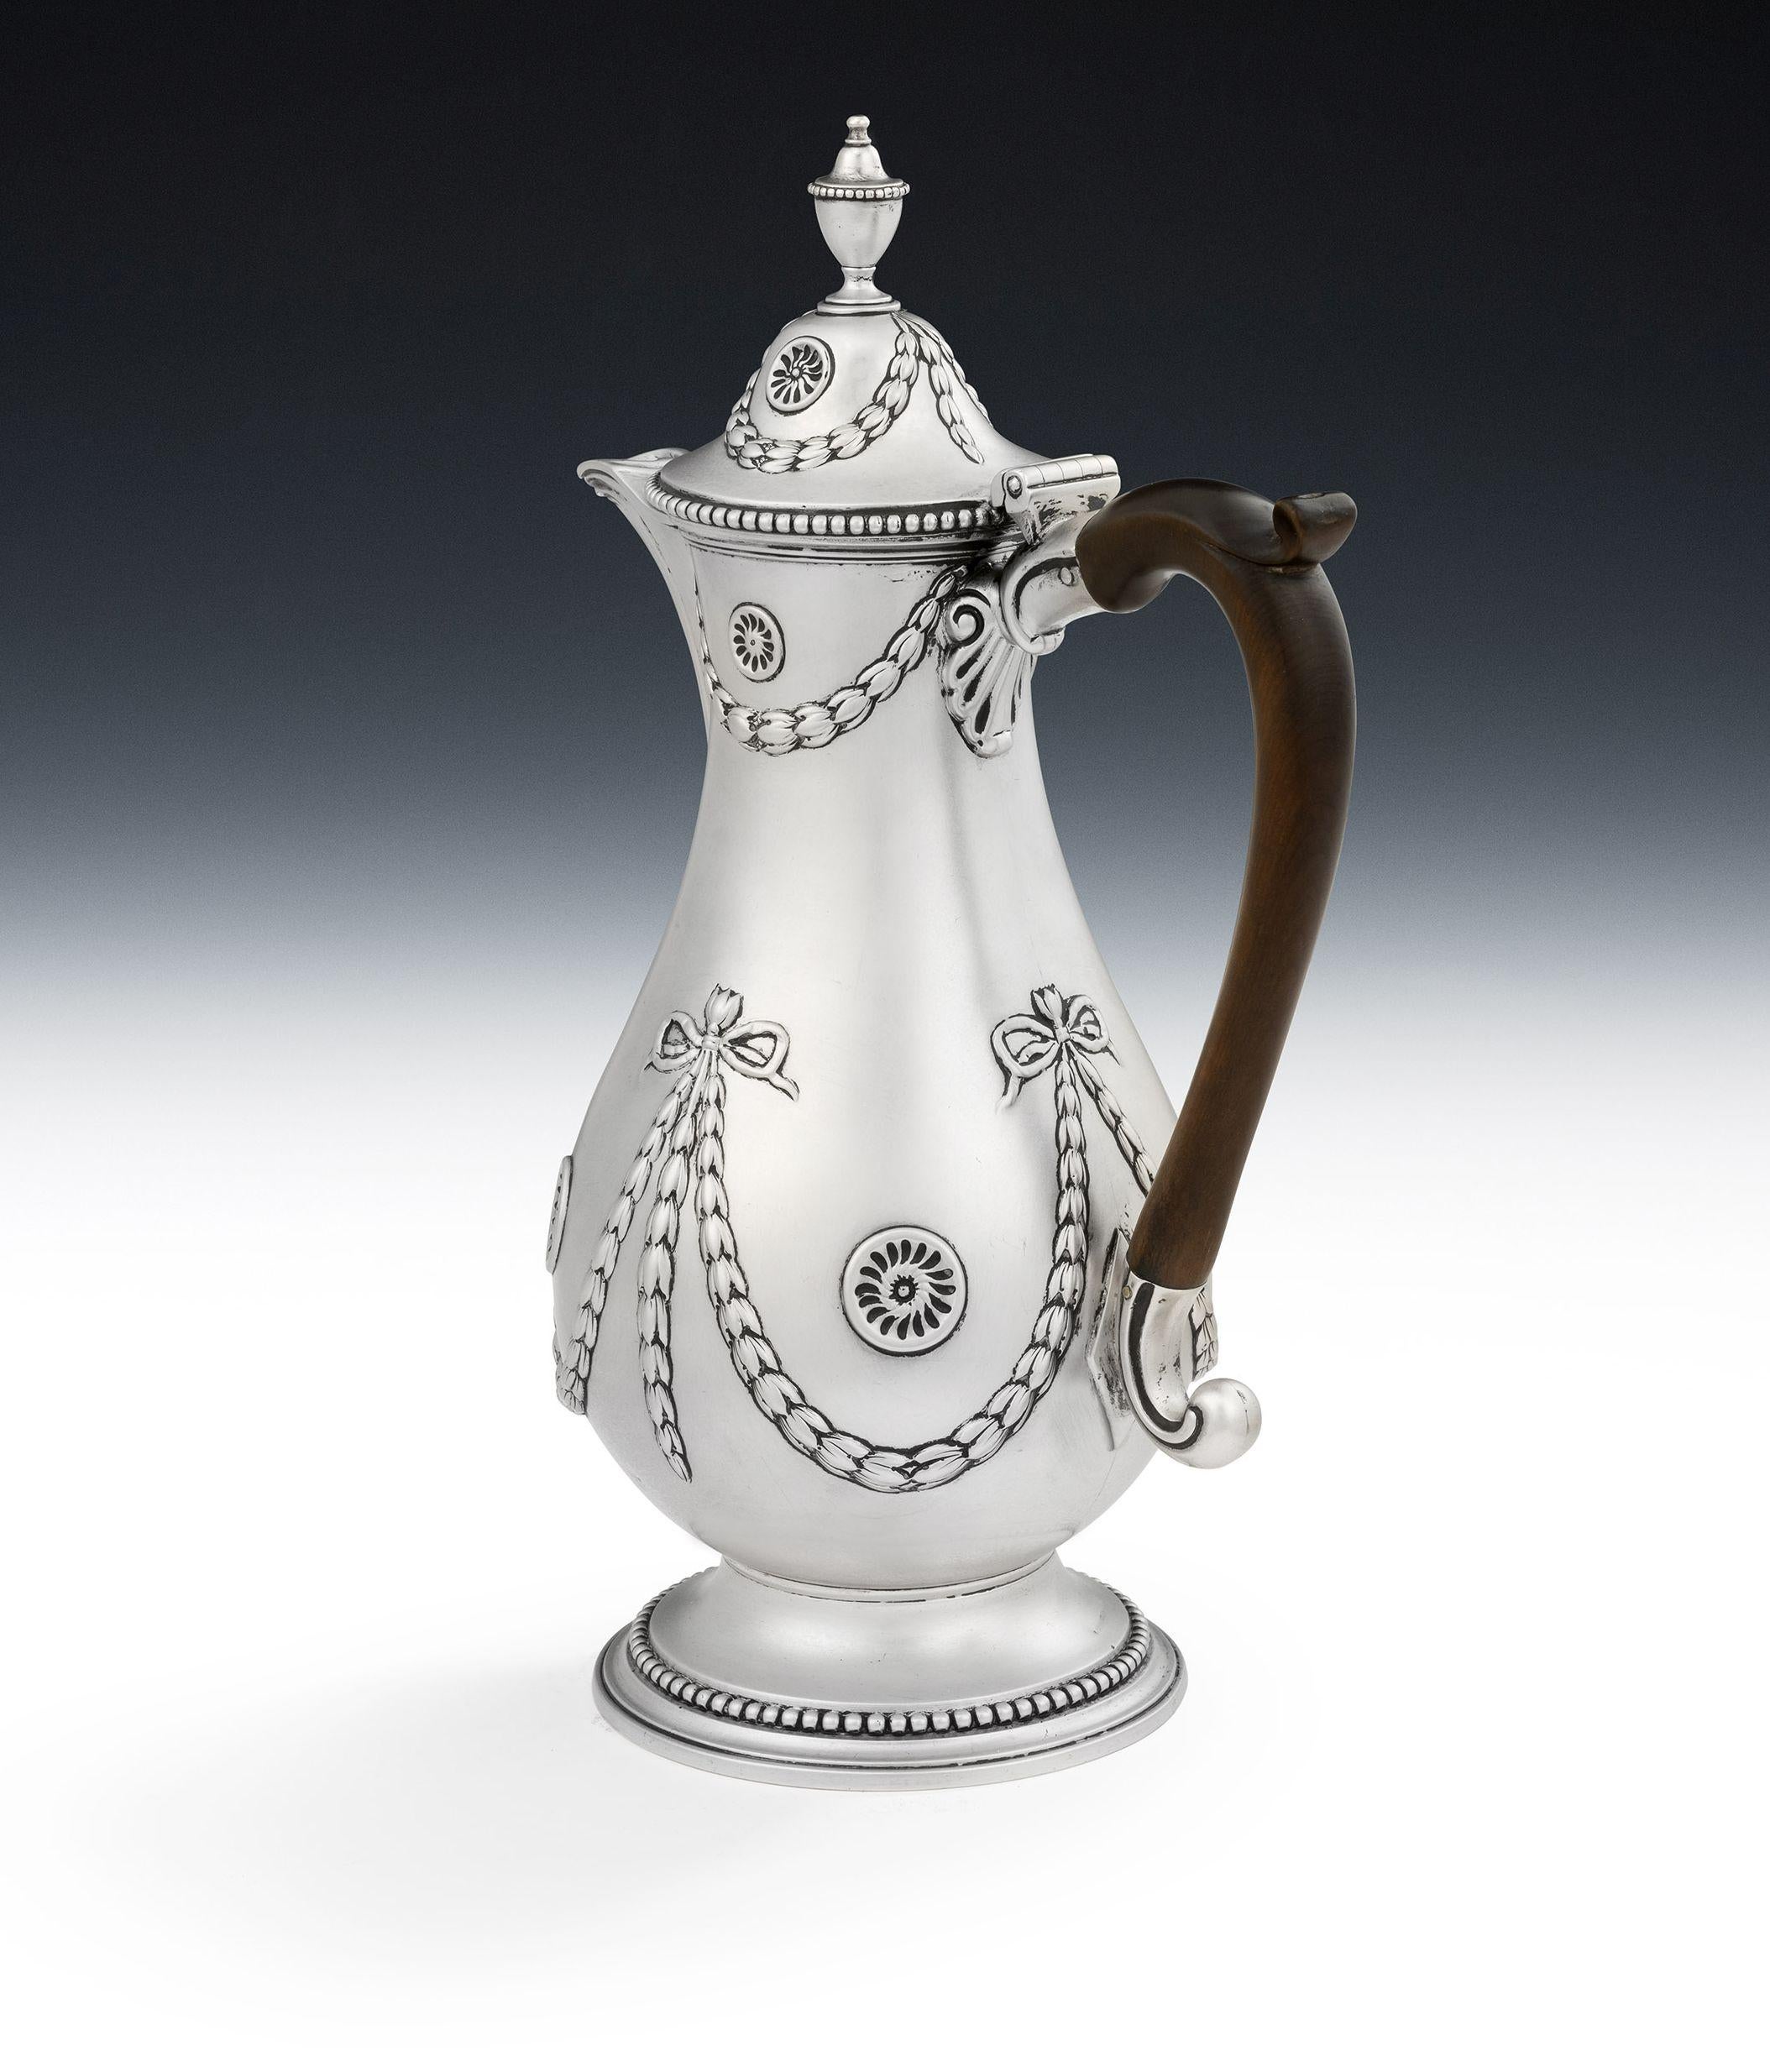 Fina e inusual jarra neoclásica Jorge III para vino y agua, fabricada en Londres en 1775 por Daniel Smith & Robert Sharp.

La jarra se apoya en un pie aplicado, decorado con atrevidos abalorios.  El cuerpo principal, en forma de balaustre, está